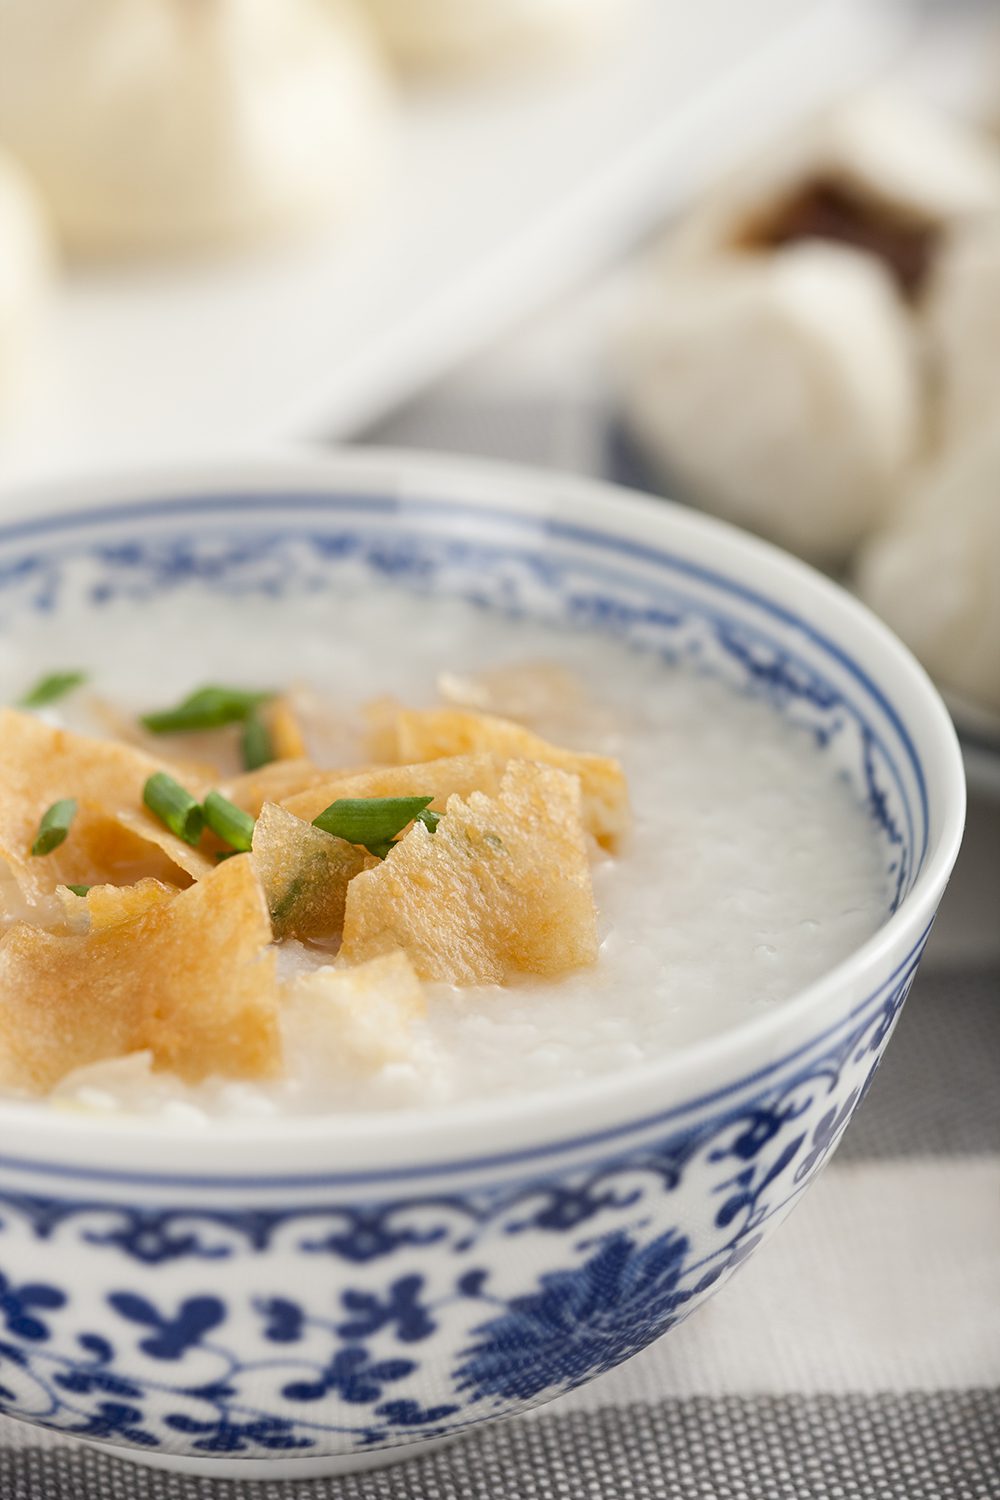 Chinese food rice porridge